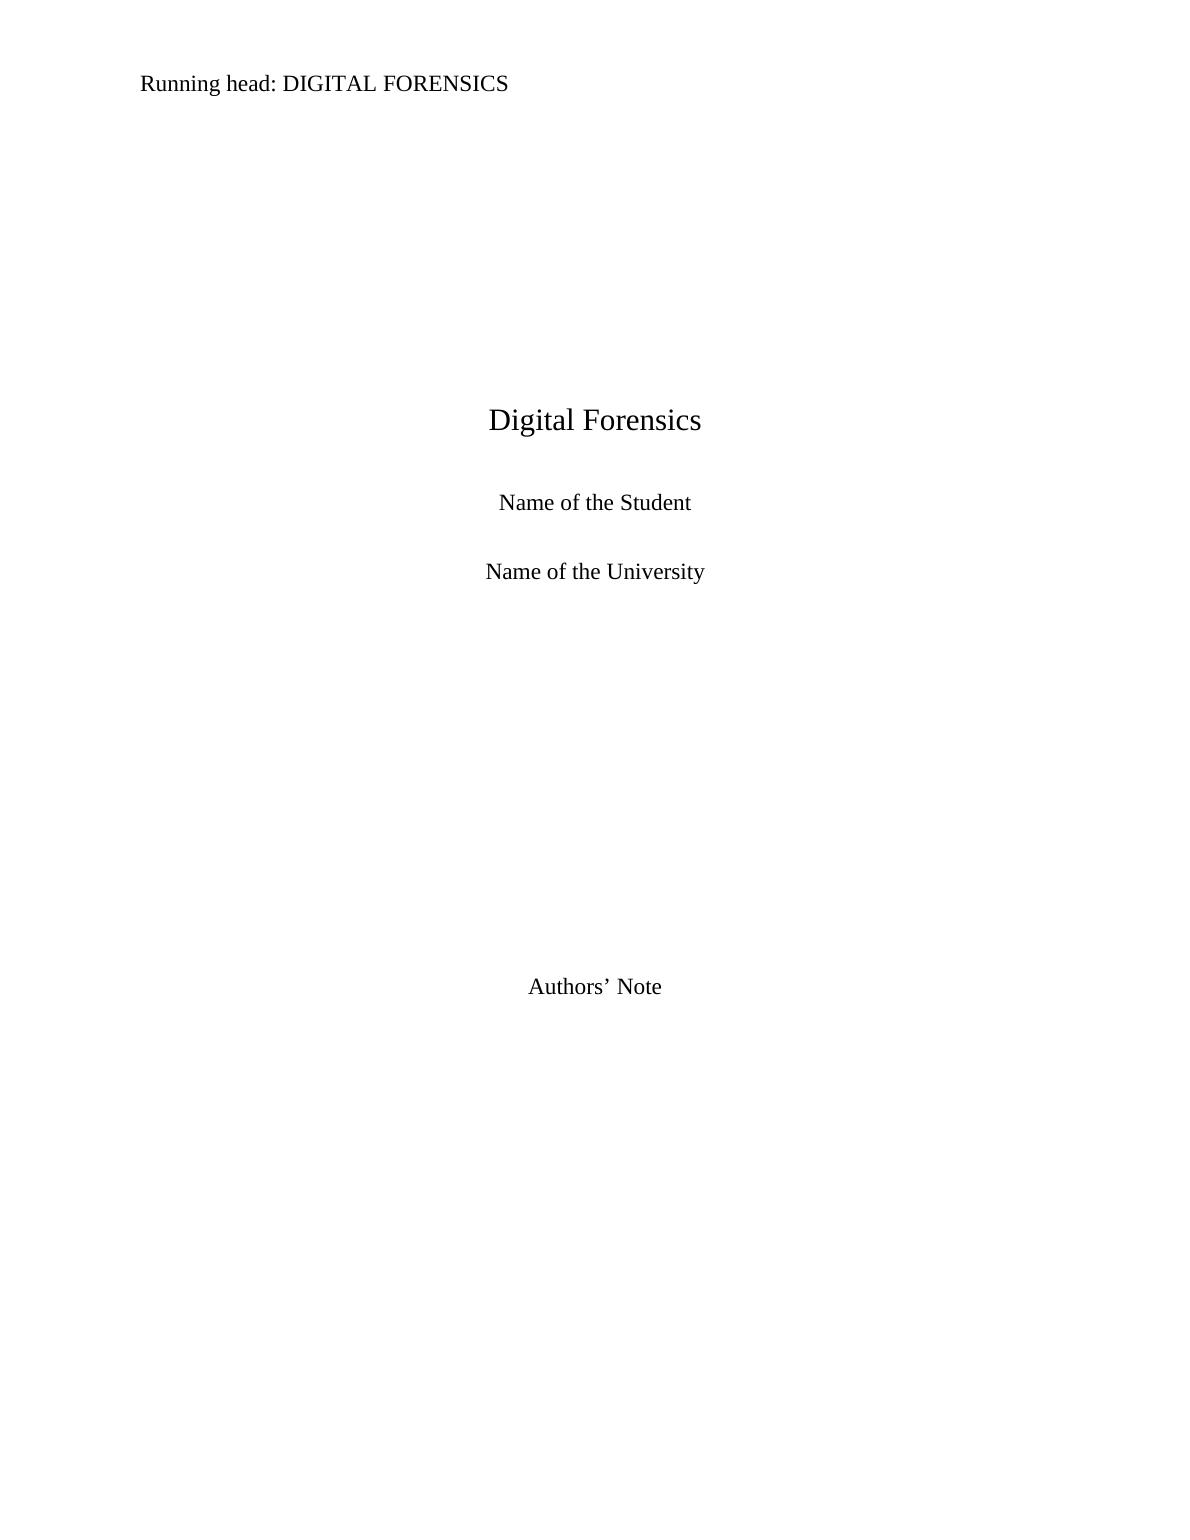 Digital Forensics Report 2022_1